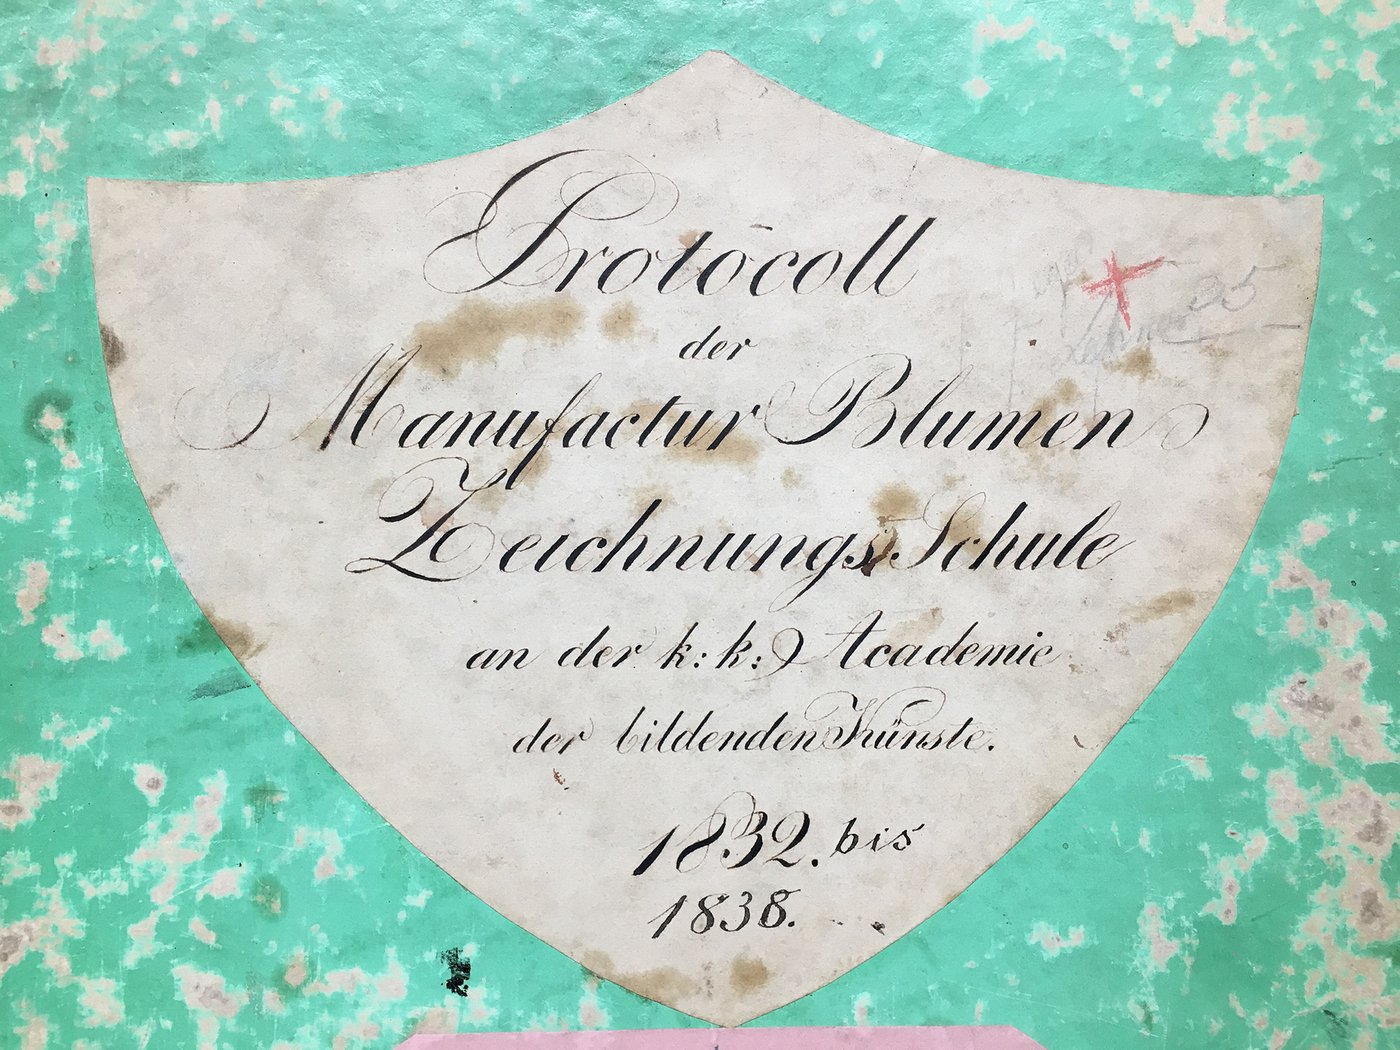 Detail des Umschlags eines Matrikelbuchs aus grünem, abgeriebenem Papier, darauf geklebt ein weißes Etikett mit Titel und Datum des Buchs in verzierter Handschrift.